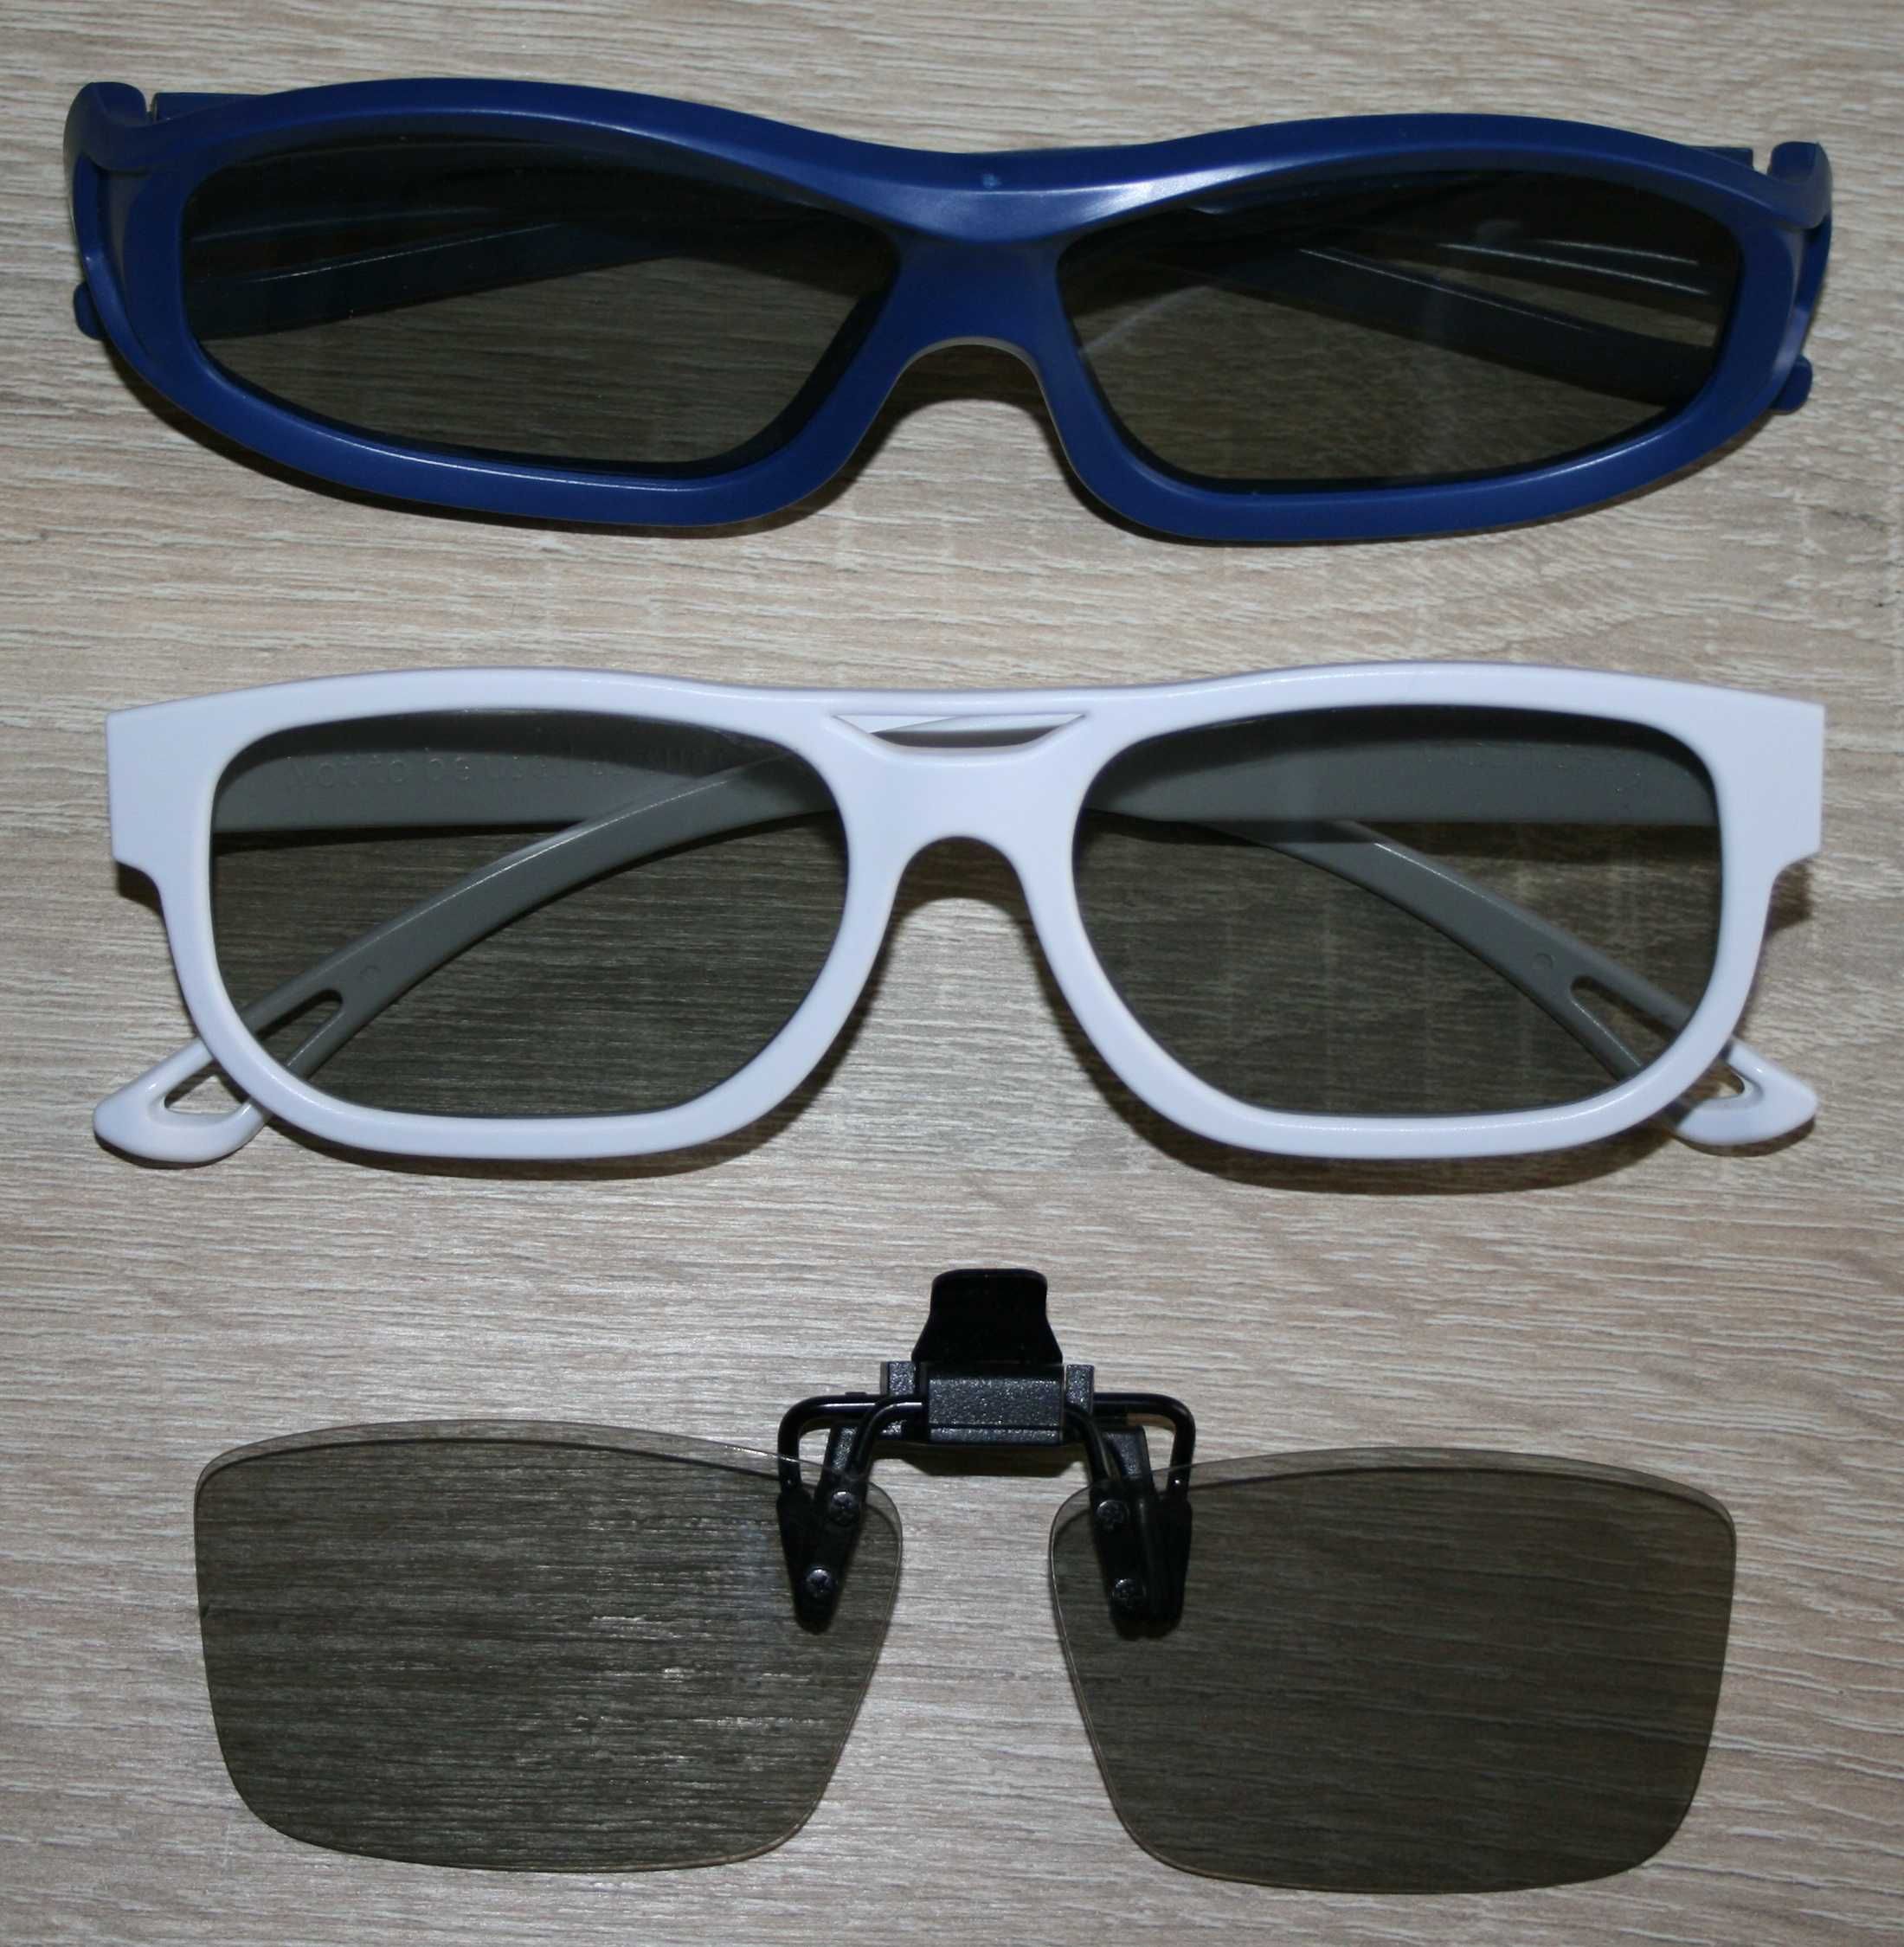 okulary 3D Master Image, LG Cinema 3D, pasywne okulary 3D LG z klipsem